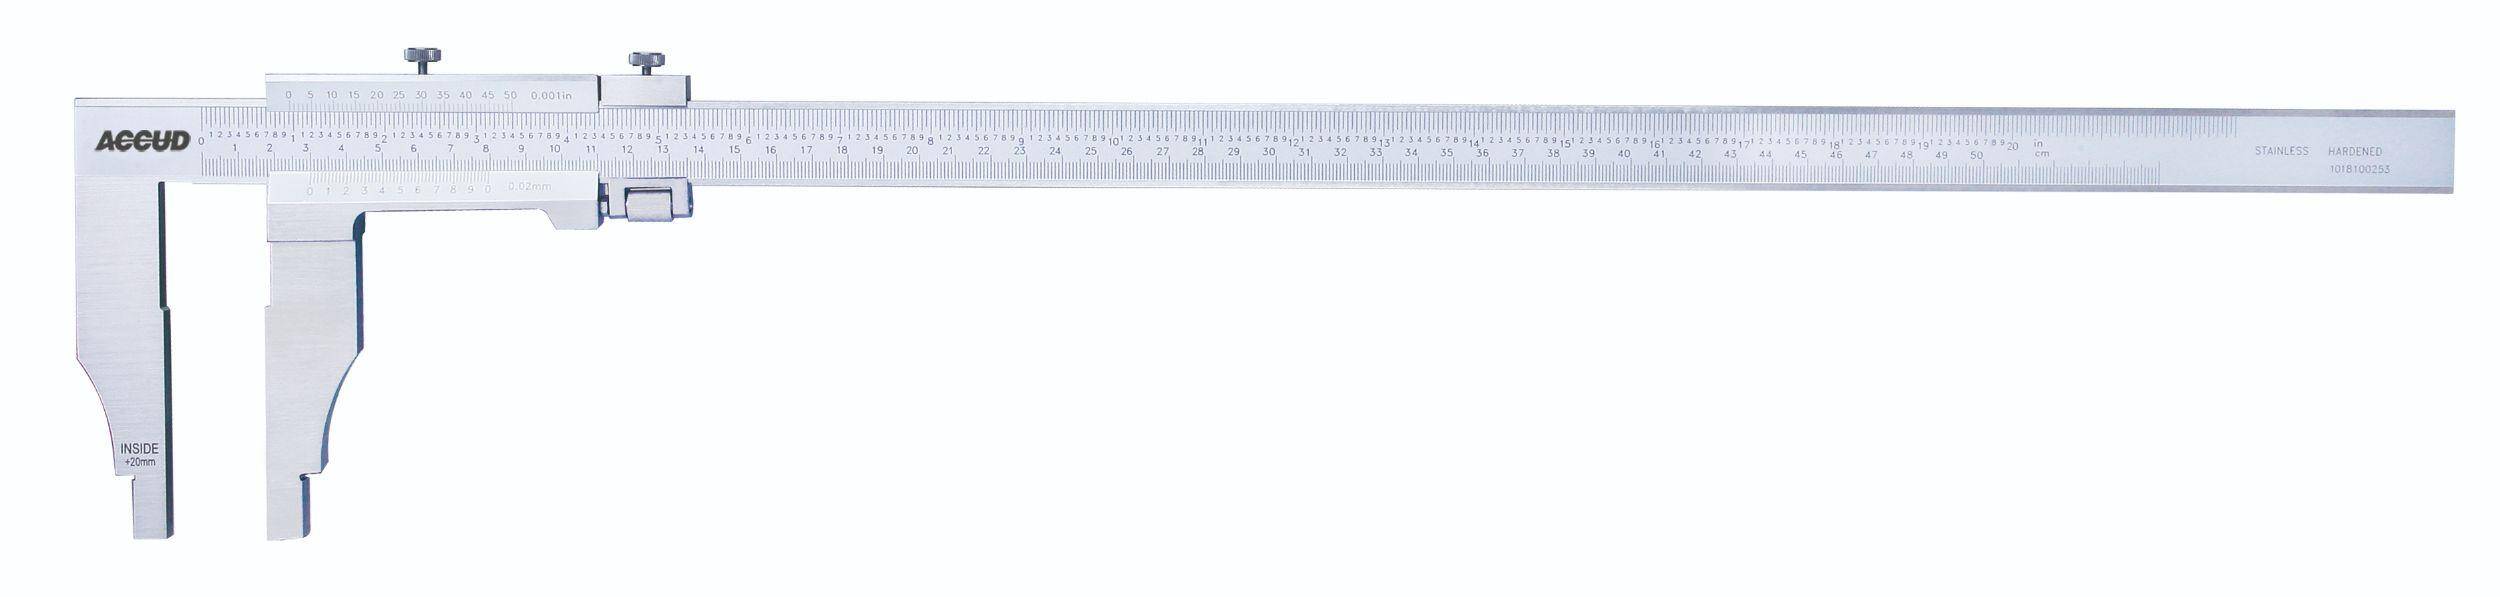 ACCUD suwmiarka analogowa 1000/0.05 mm jednostronna długość szczęk 150 mm 128-040-51 (Zdjęcie 1)